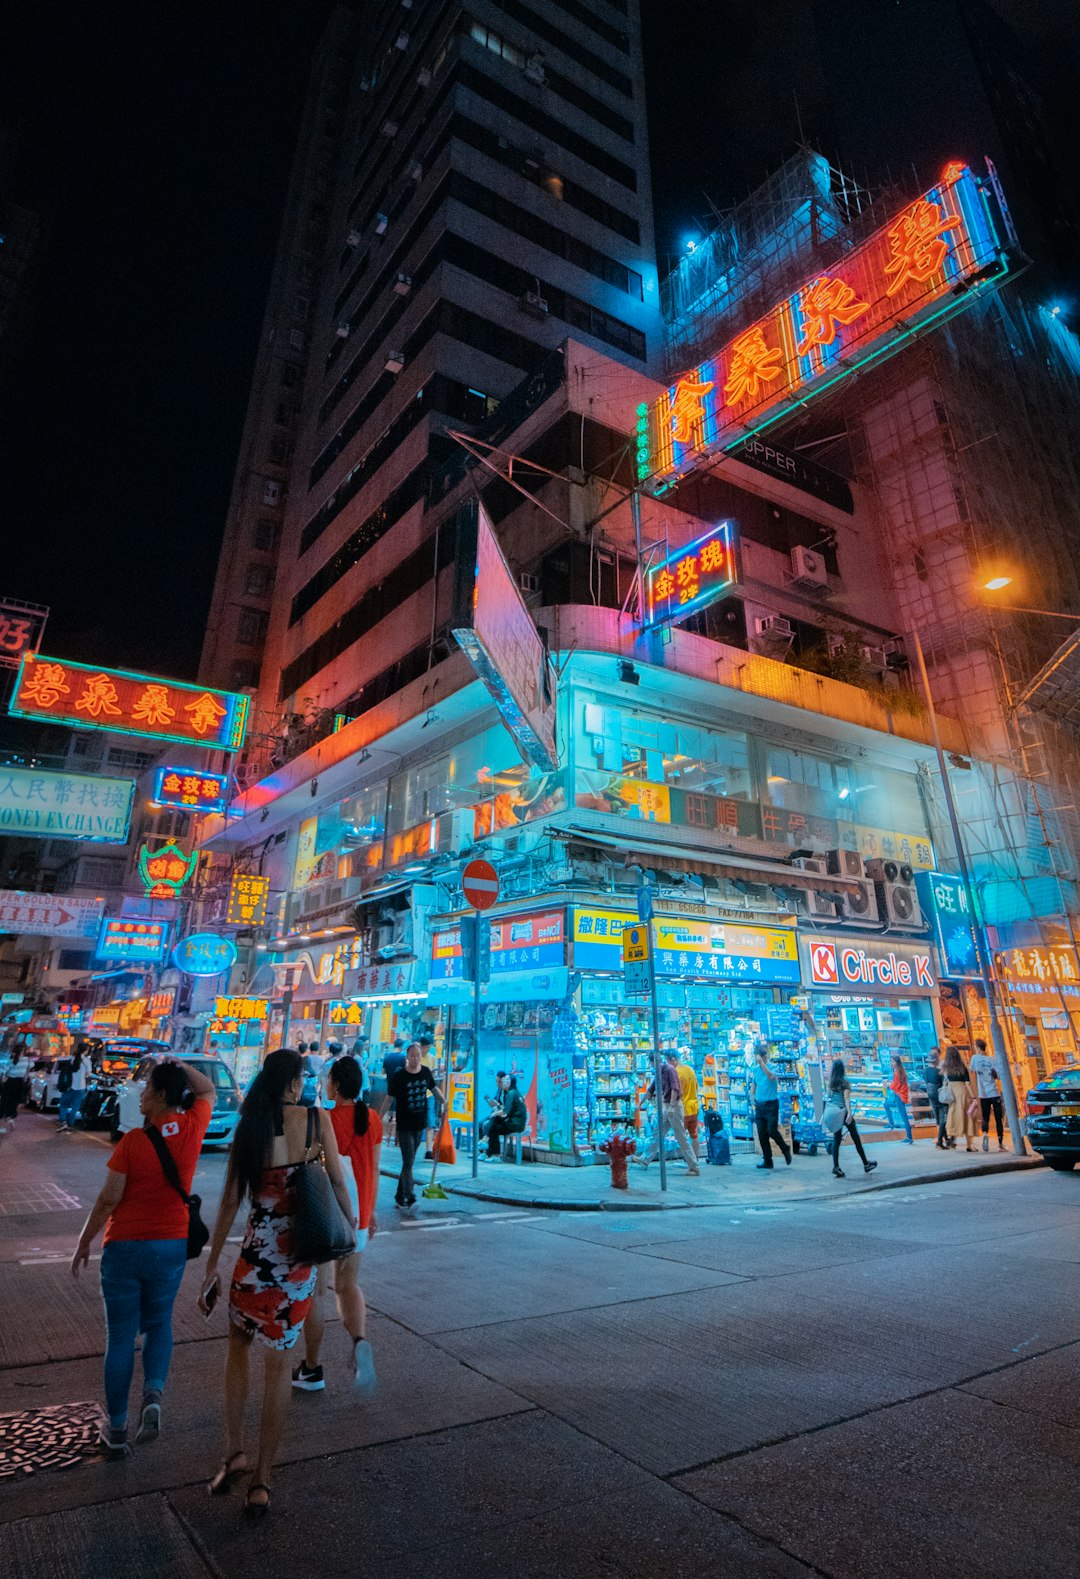 people walking on street during night